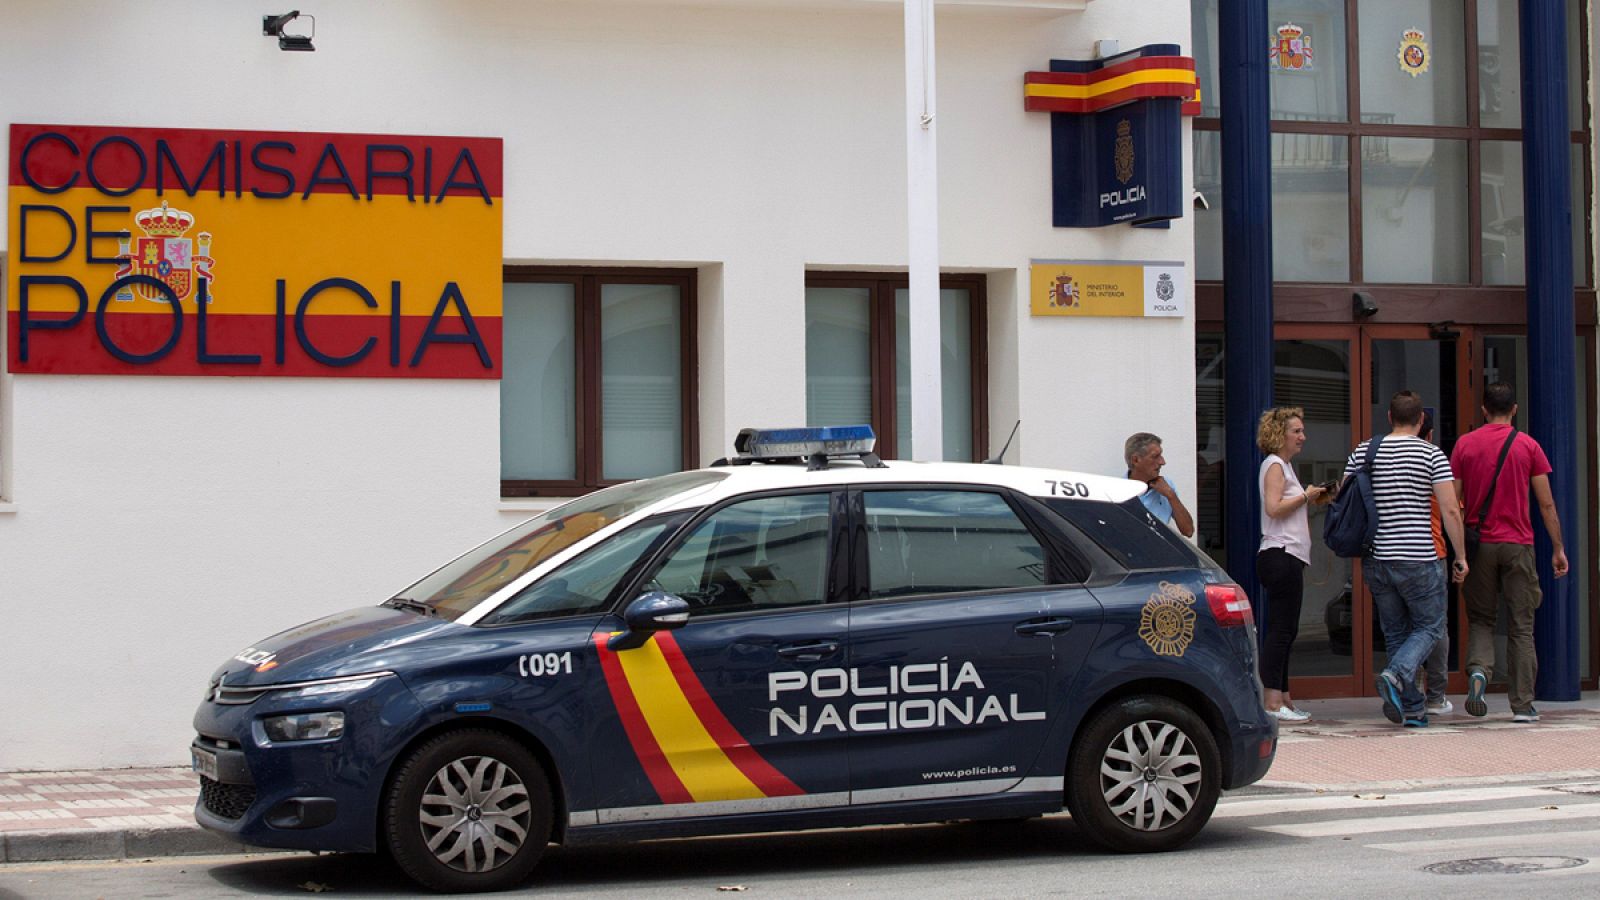 Comisaría de la Policía Nacional de Estepona